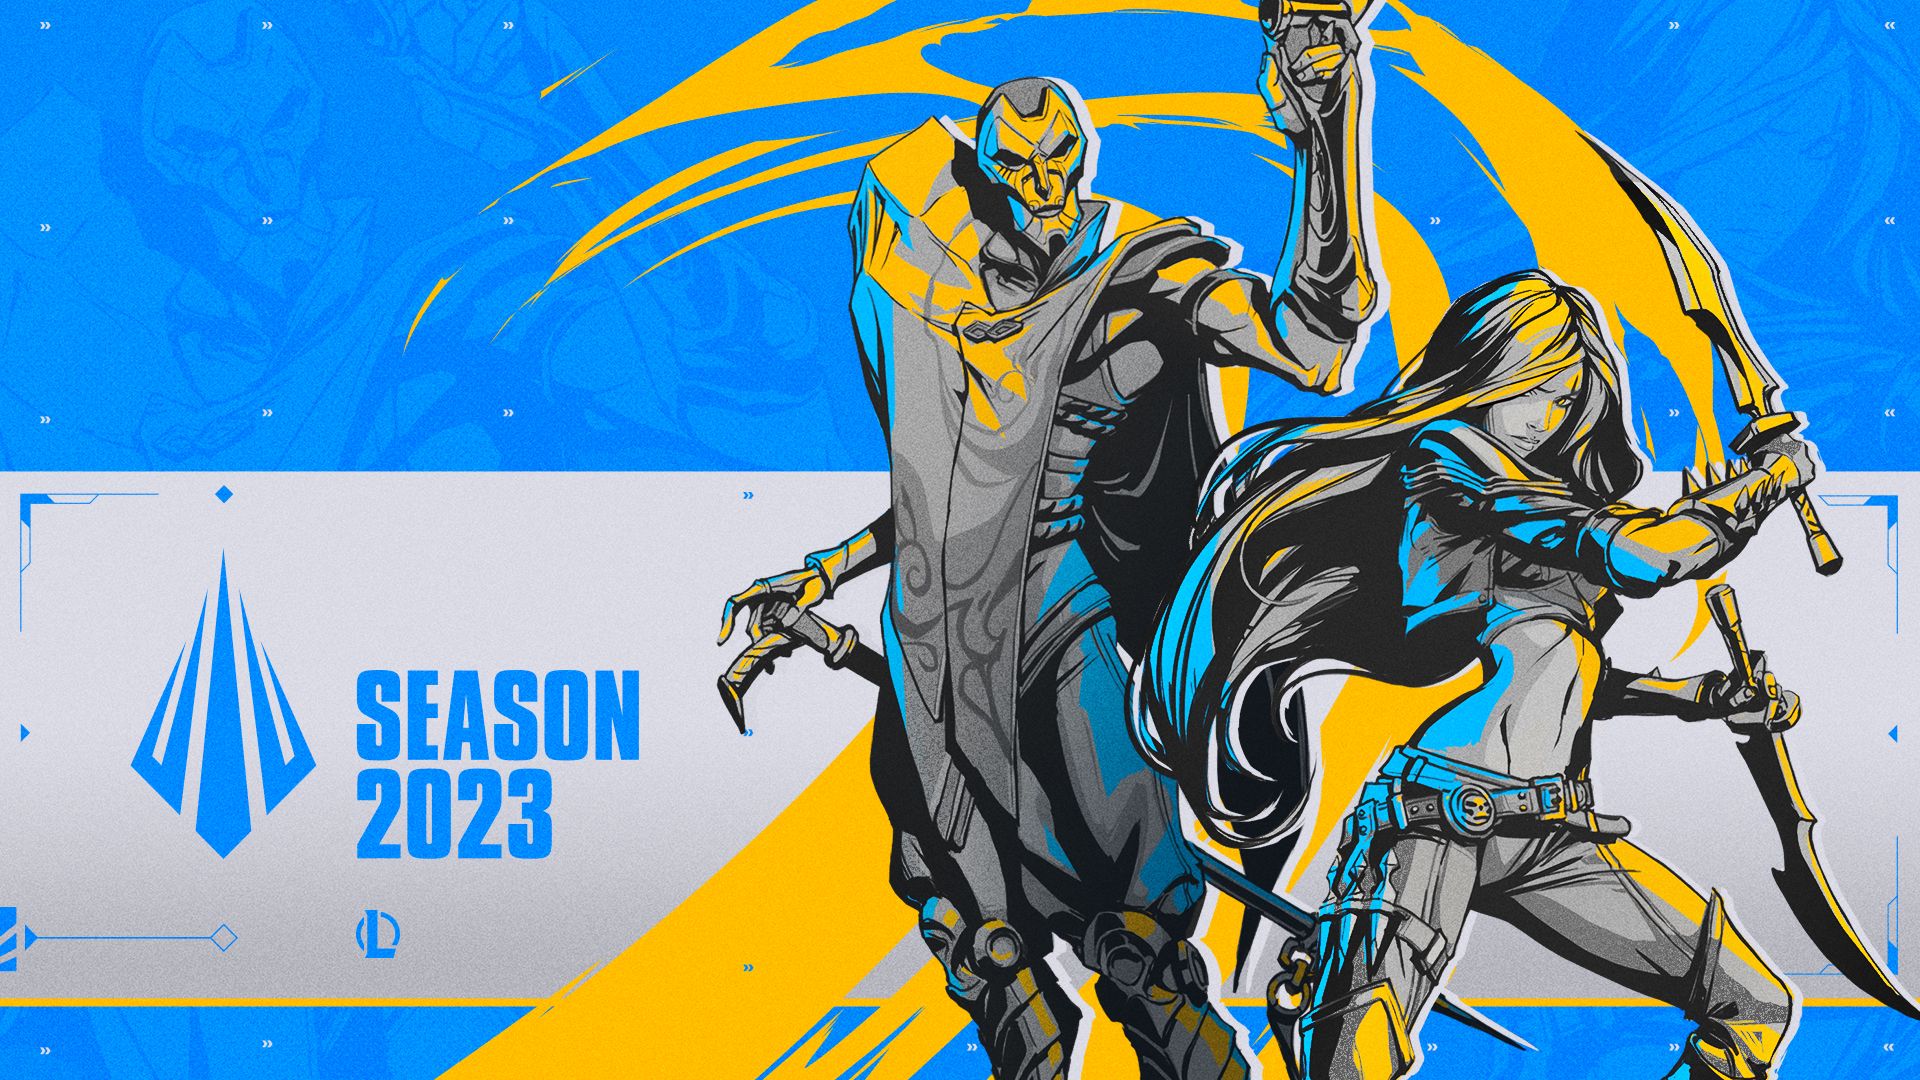 Boas-vindas à Temporada 2023 do League of Legends - Portal Refil